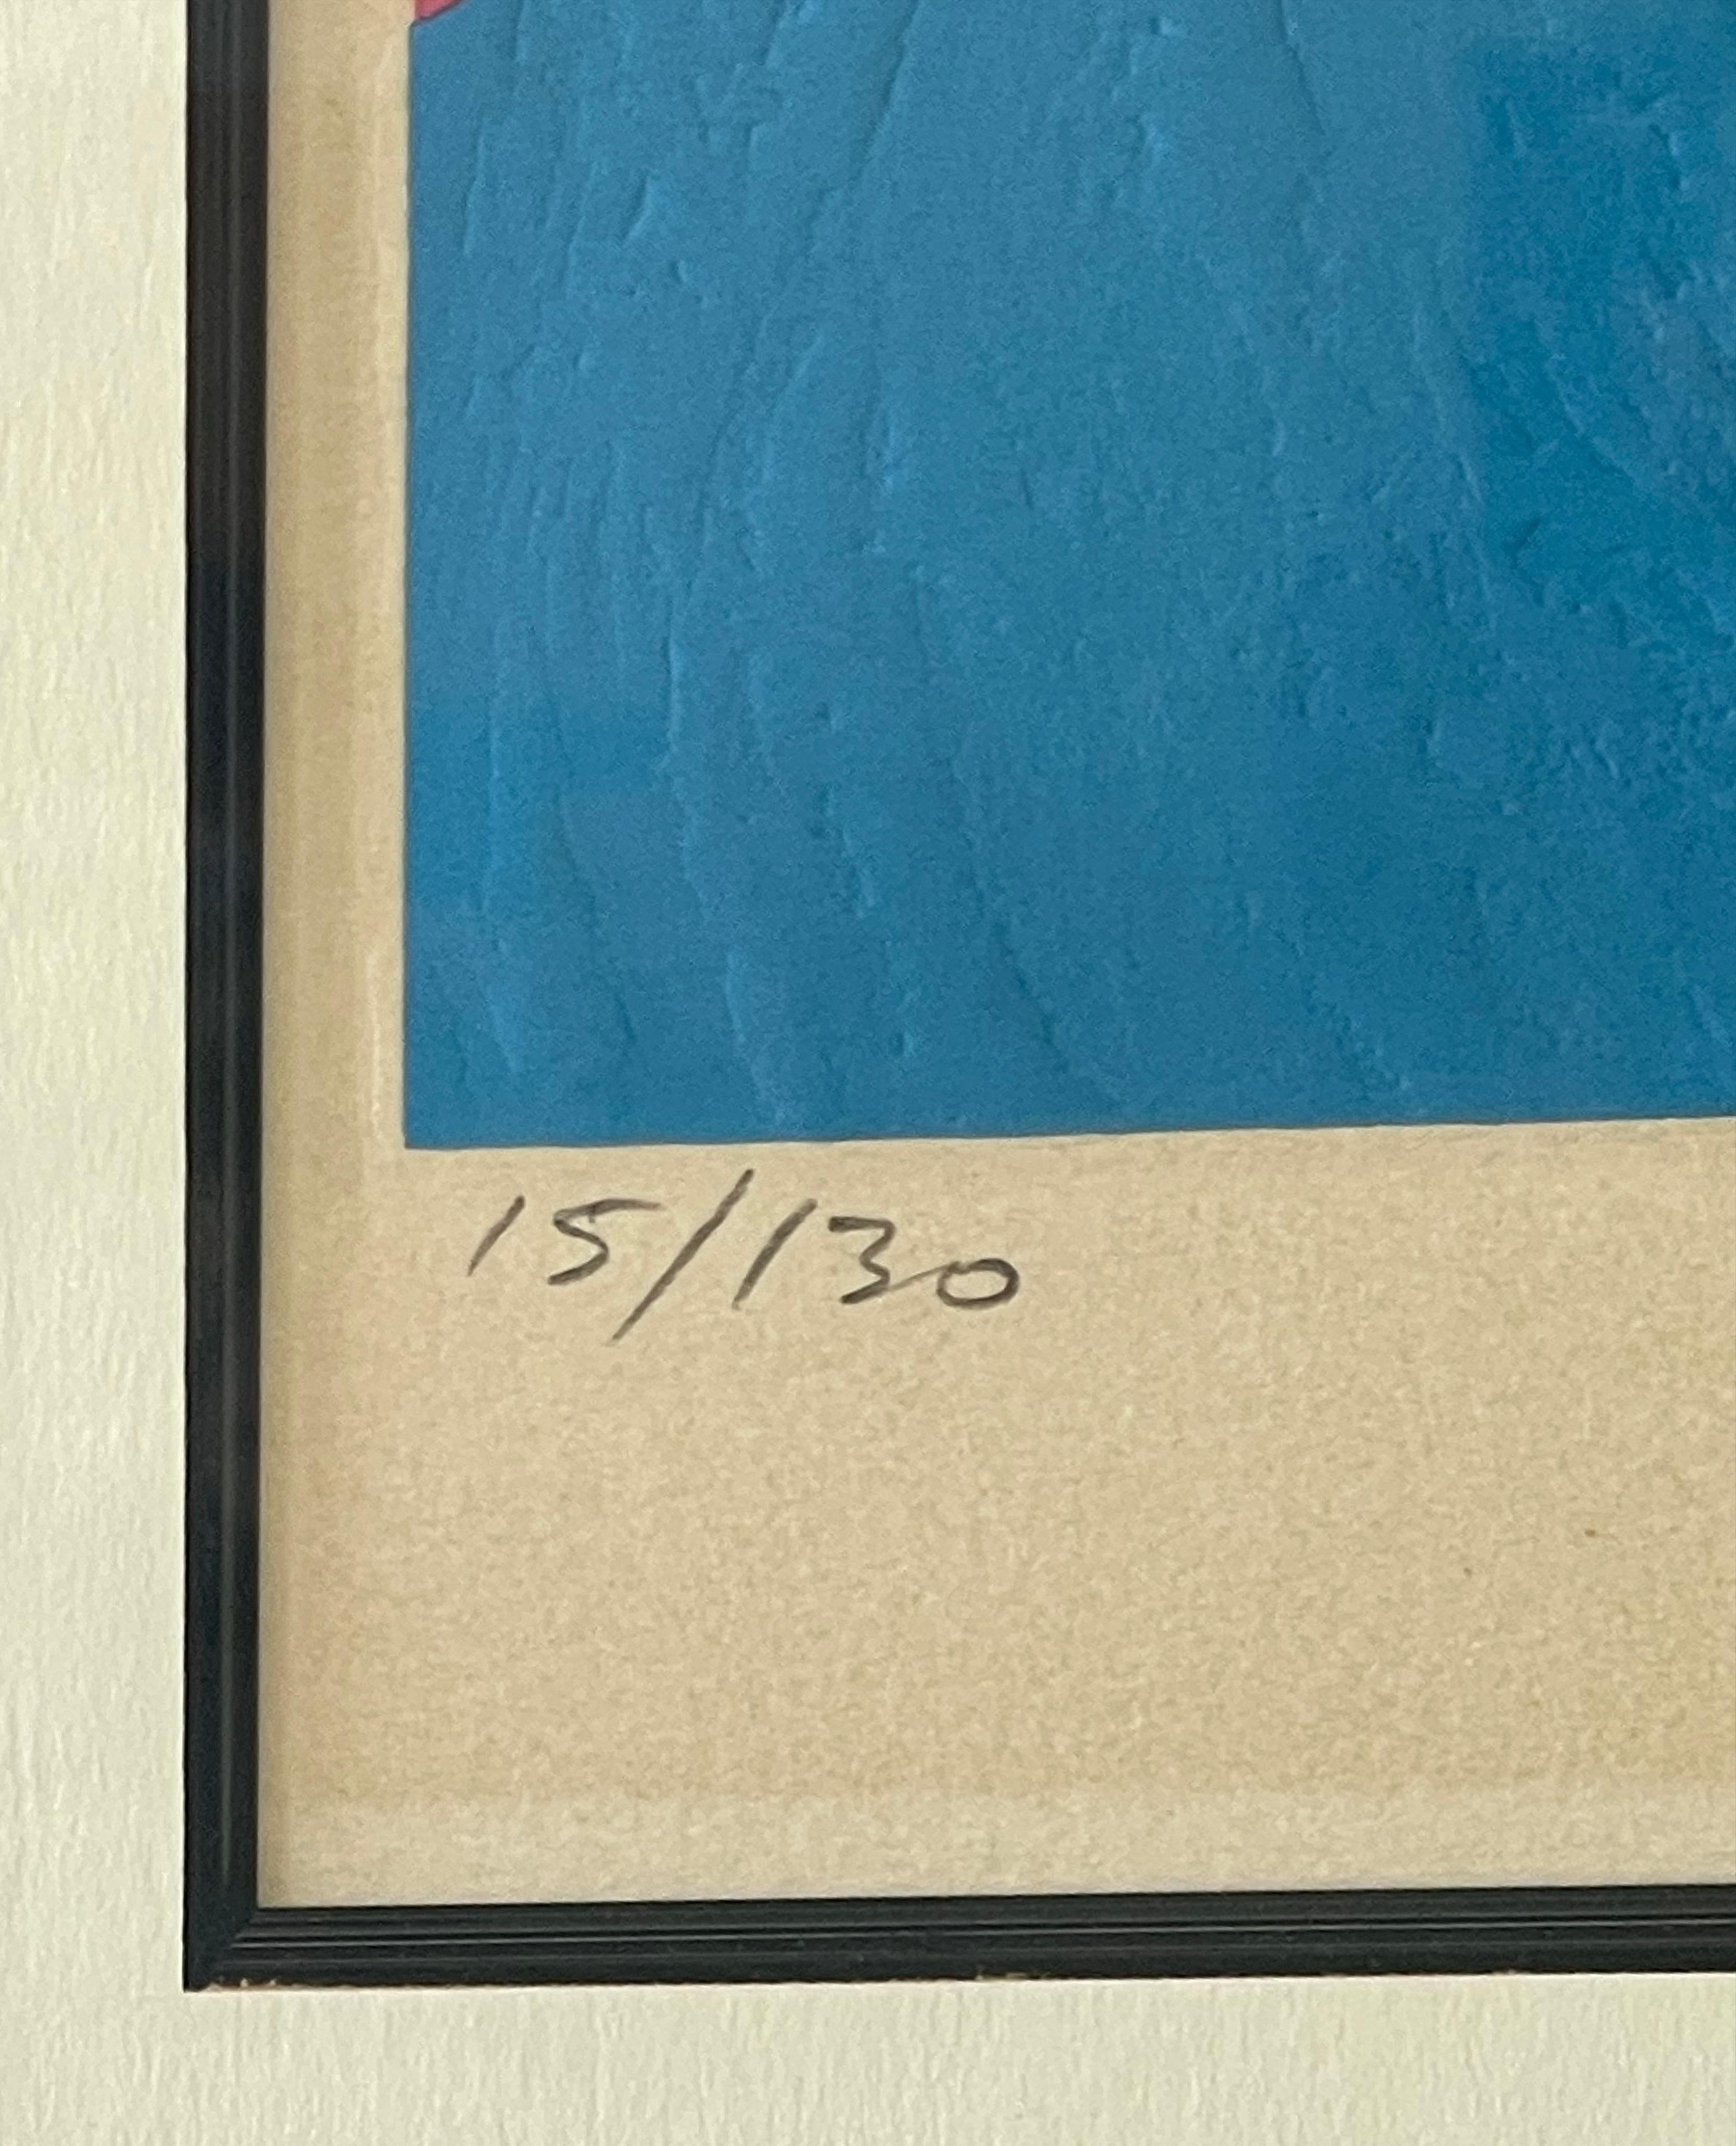 Künstler:  Karel Appel 
Titel: Lila Eule 
Größe: 41 x 32 Zoll (90 x 80 cm) (Gerahmt: 47 x 38 Zoll)
Medium:  Aquatinta und Carborandum
Auflage:  von 130  
Jahr:  1979
Anmerkungen:  Karel Appel 